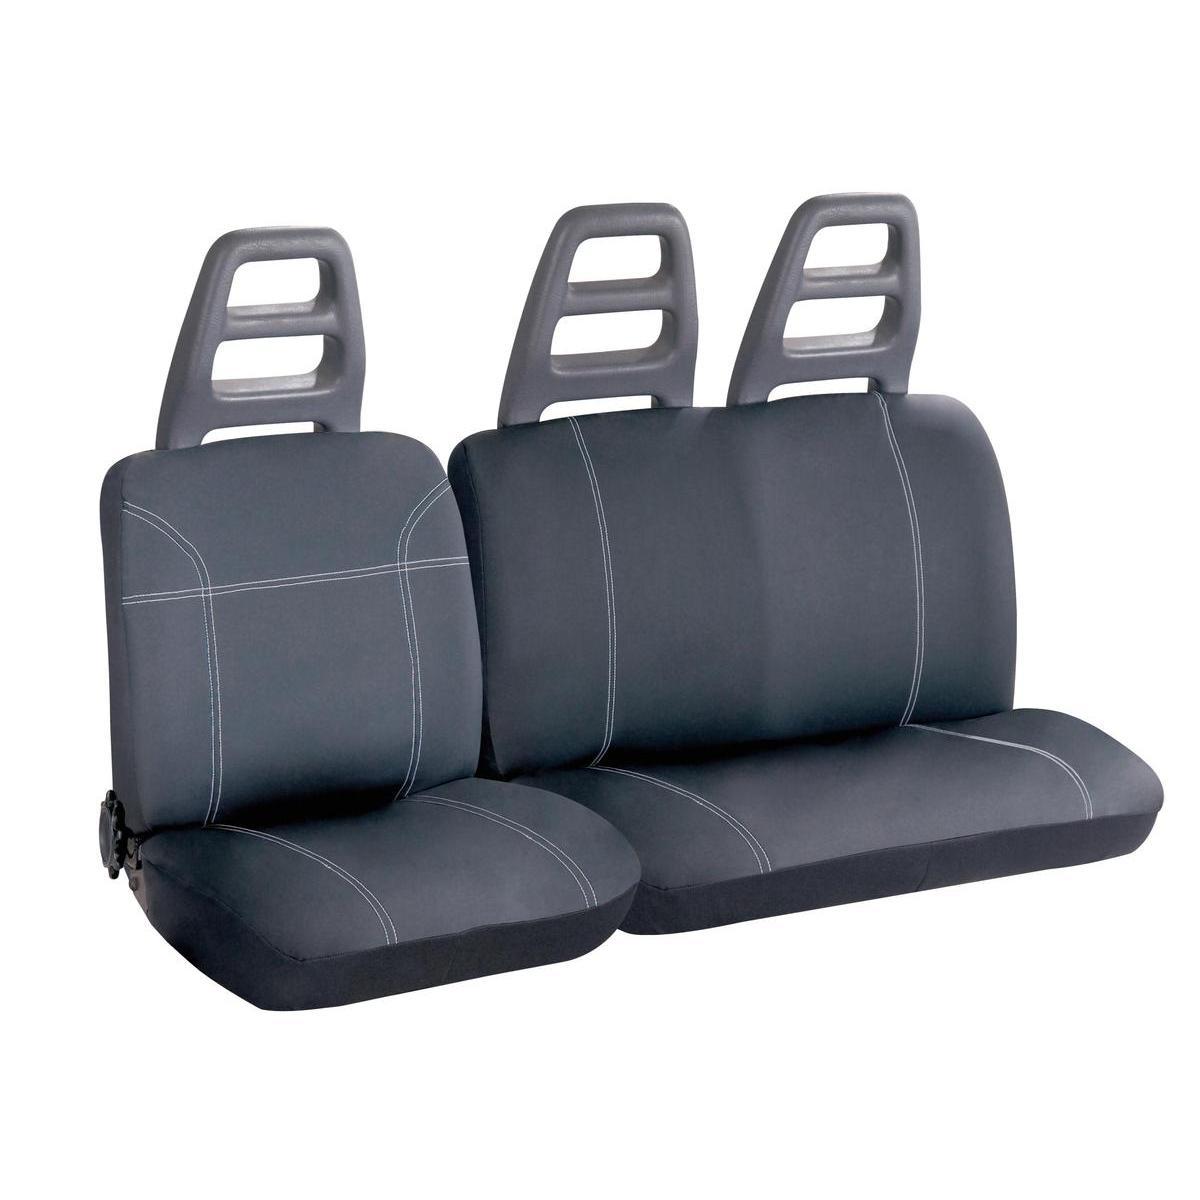 3 Housses de siège auto pour véhicule utilitaire - 14 x 27 x 26 cm - Gris